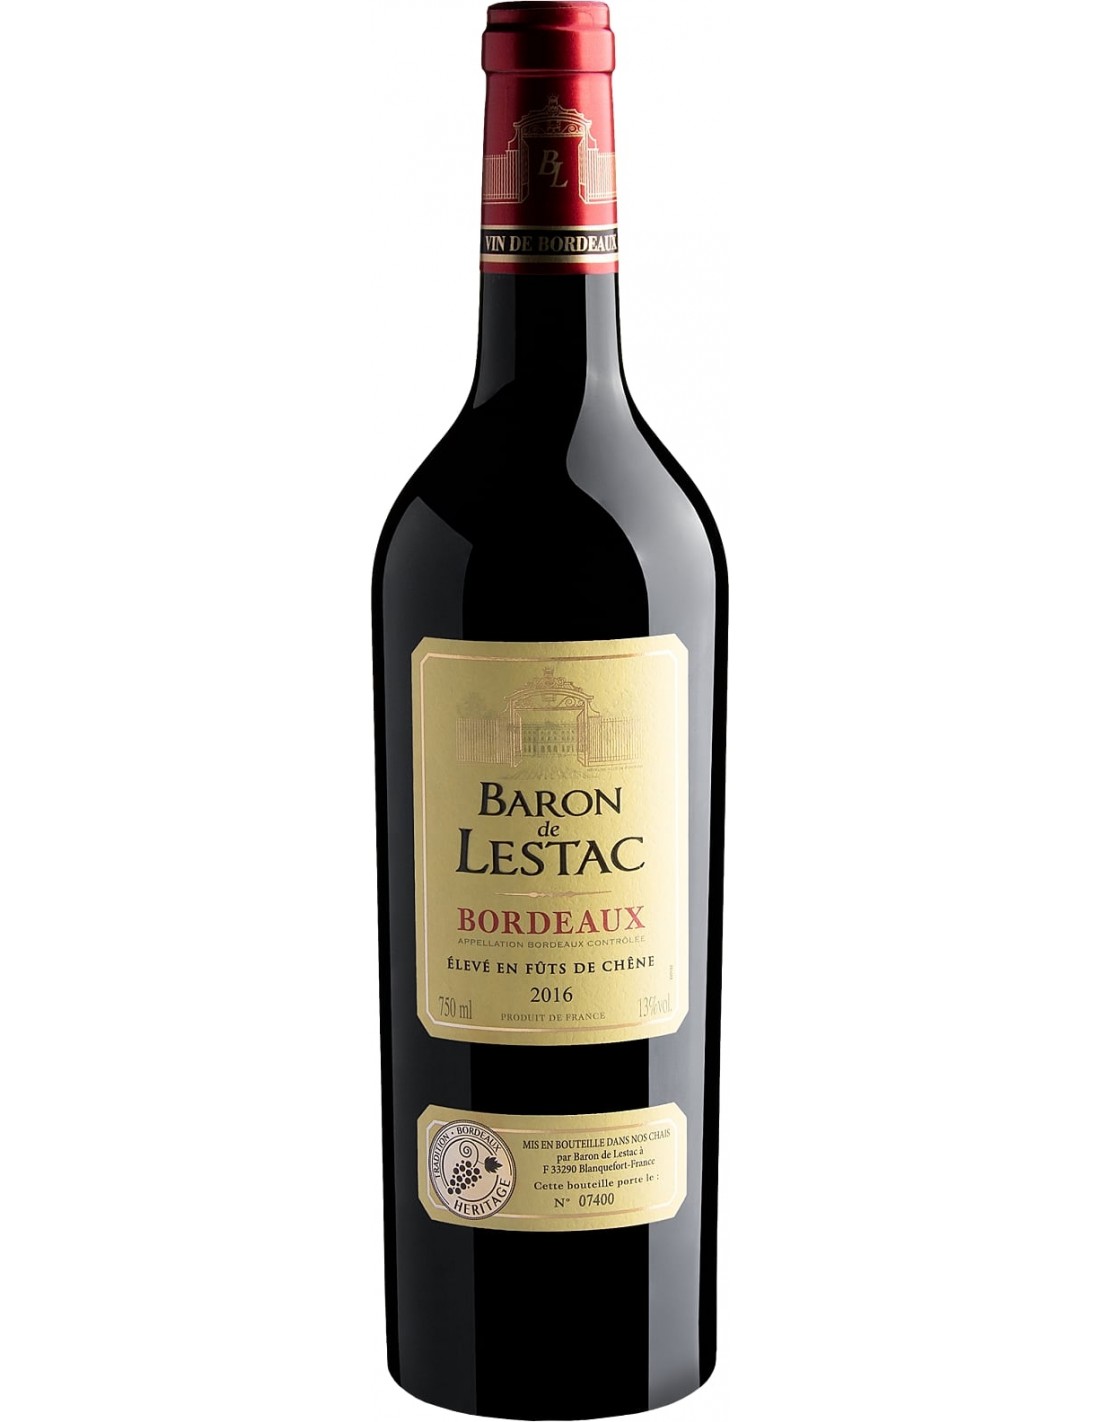 Vin rosu, Baron de Lestac Bordeaux, 0.75L, 13% alc., Franta alcooldiscount.ro